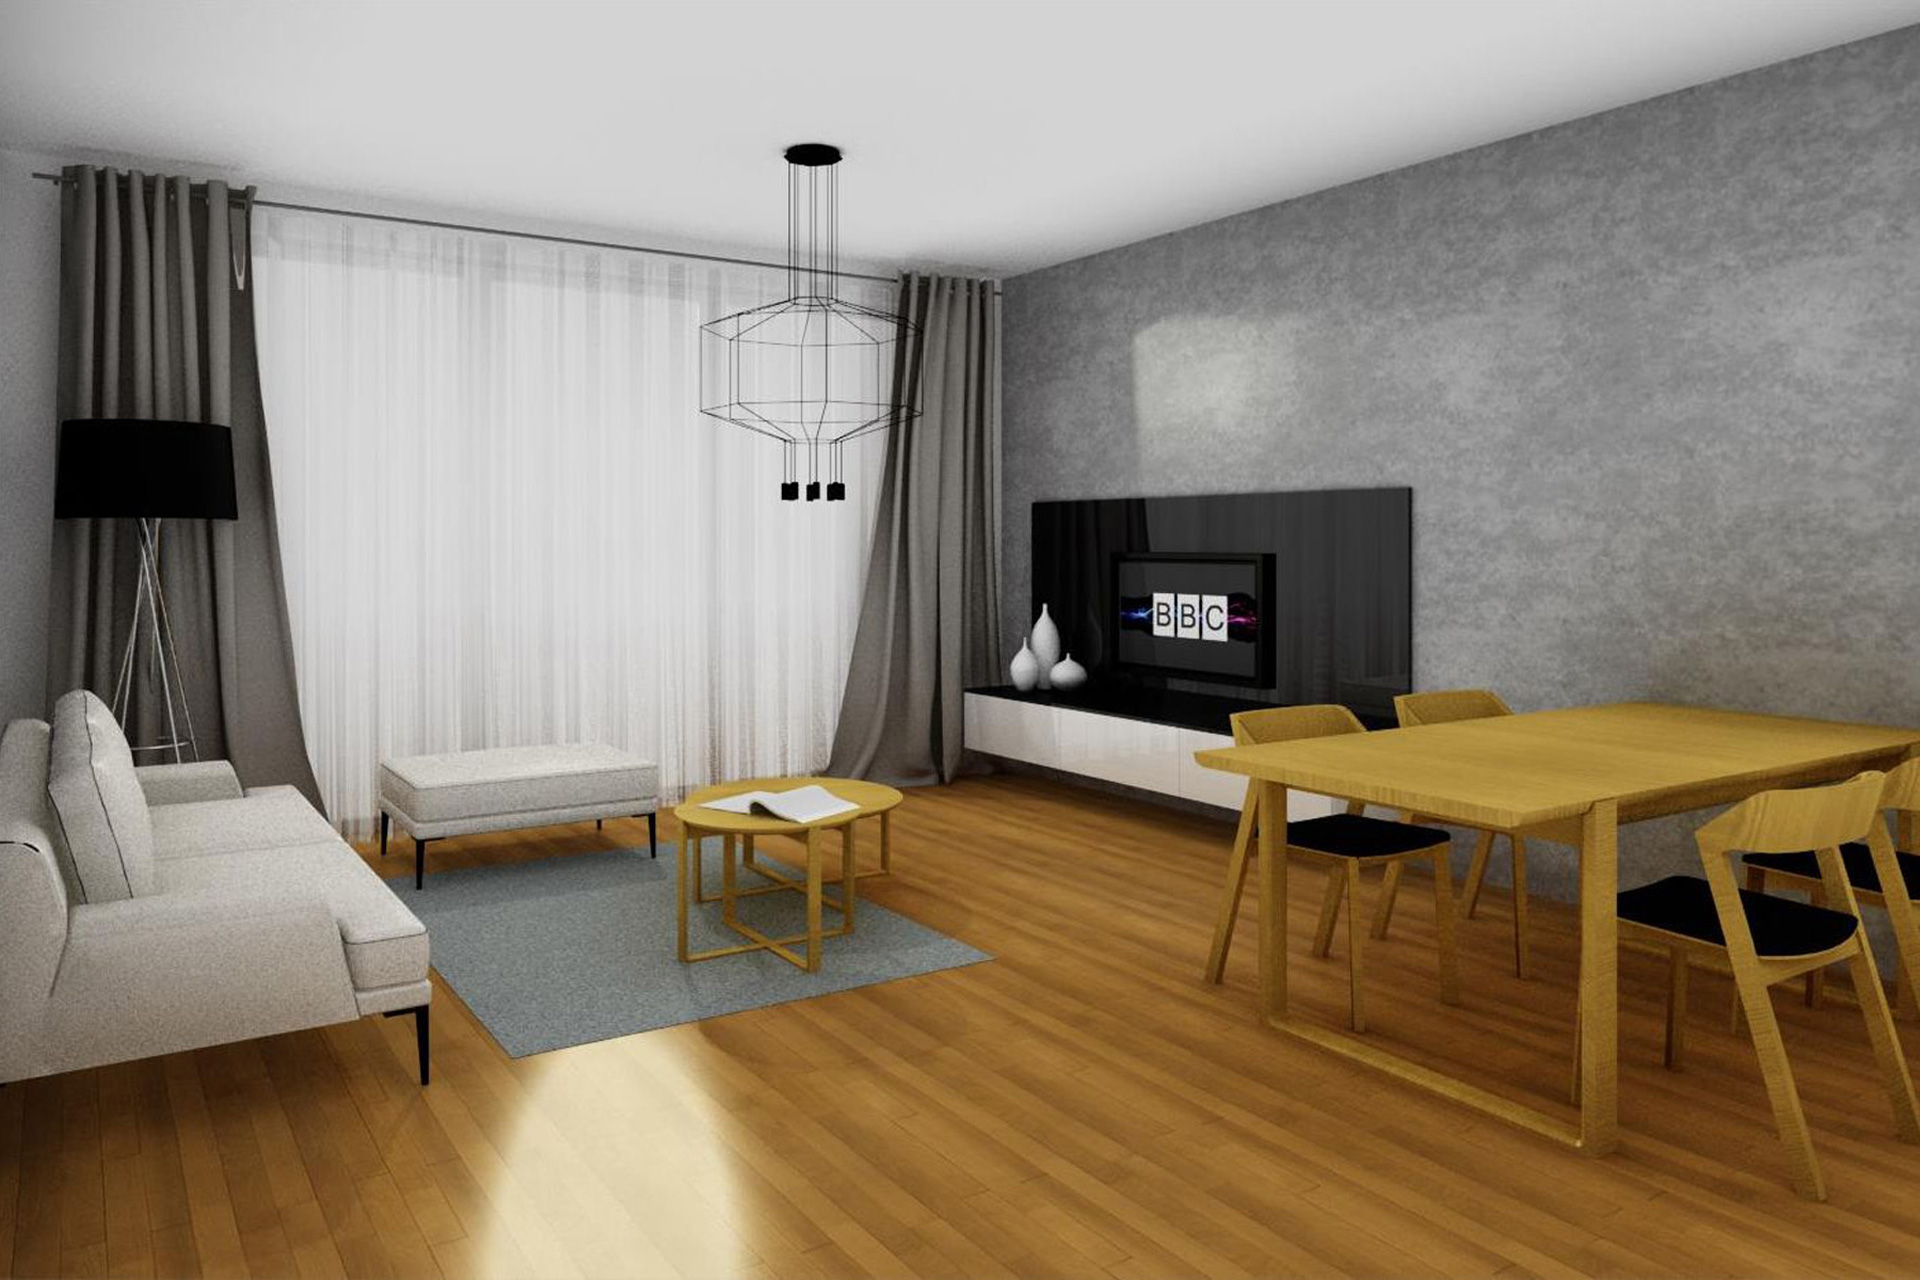 Hanák nábytek Návrh Interiér Vizualizace Obývací pokoj